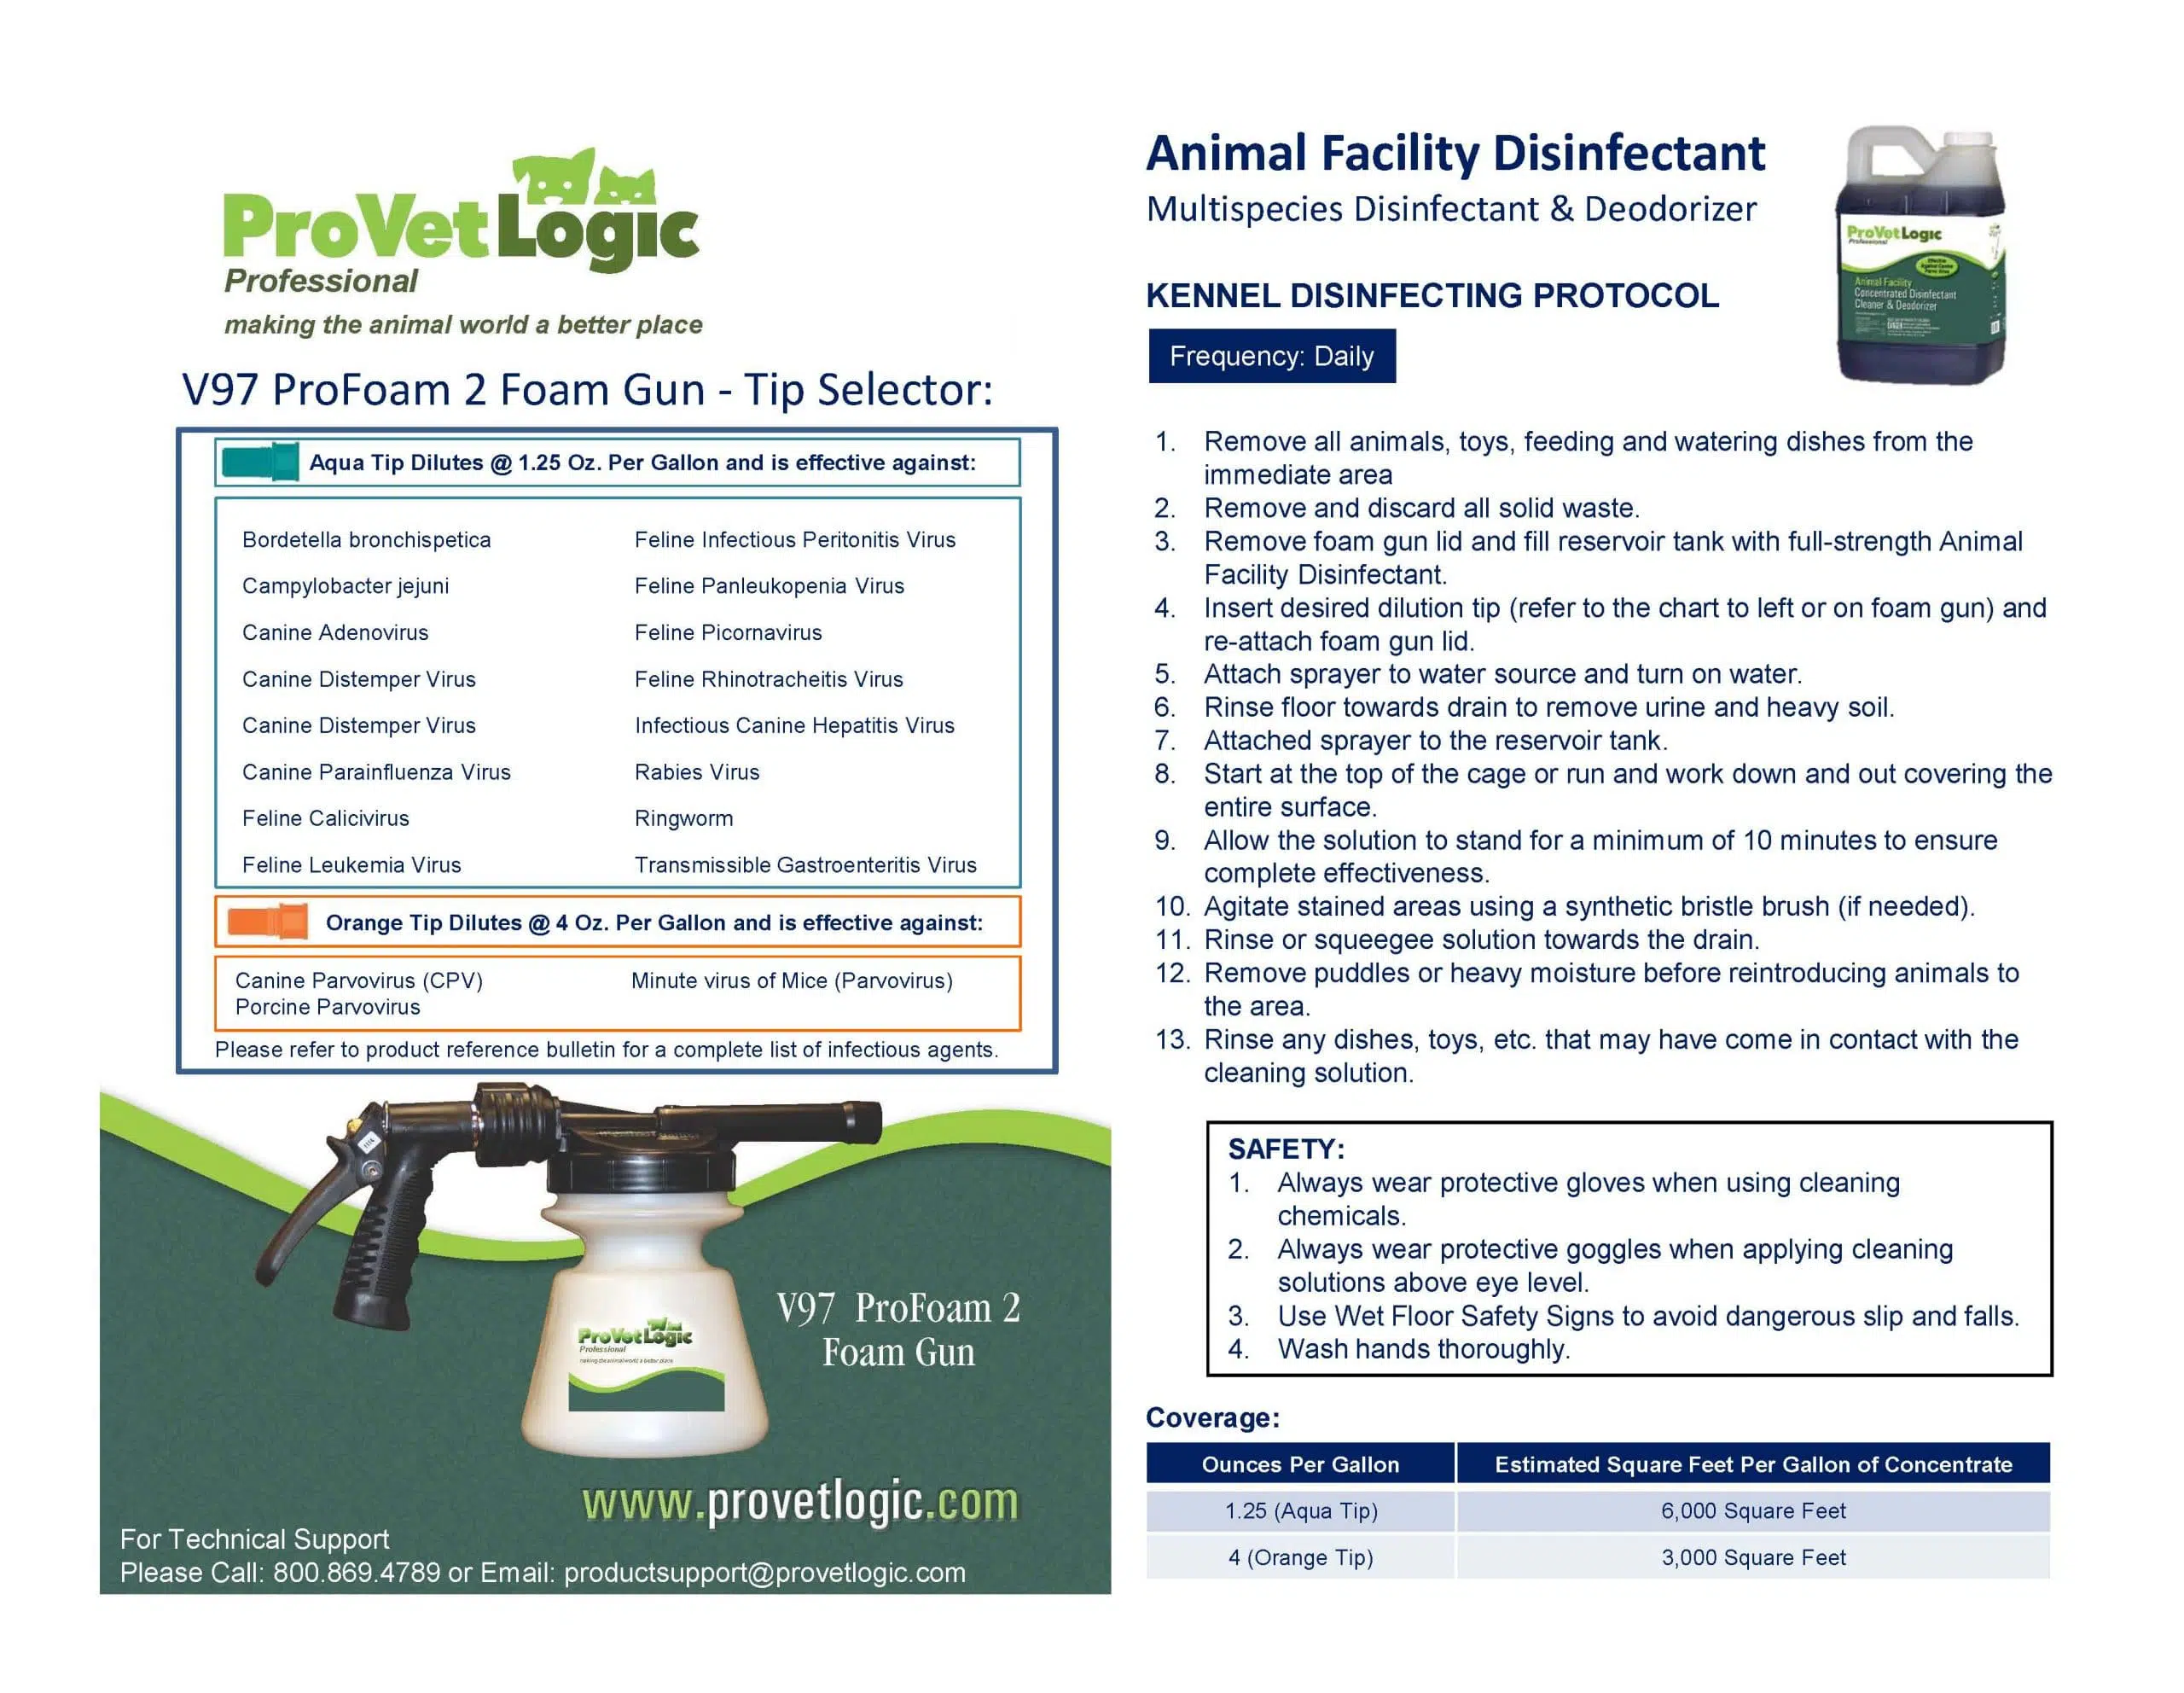 Animal Facility Disinfectant Sanitizing Kit Instructions